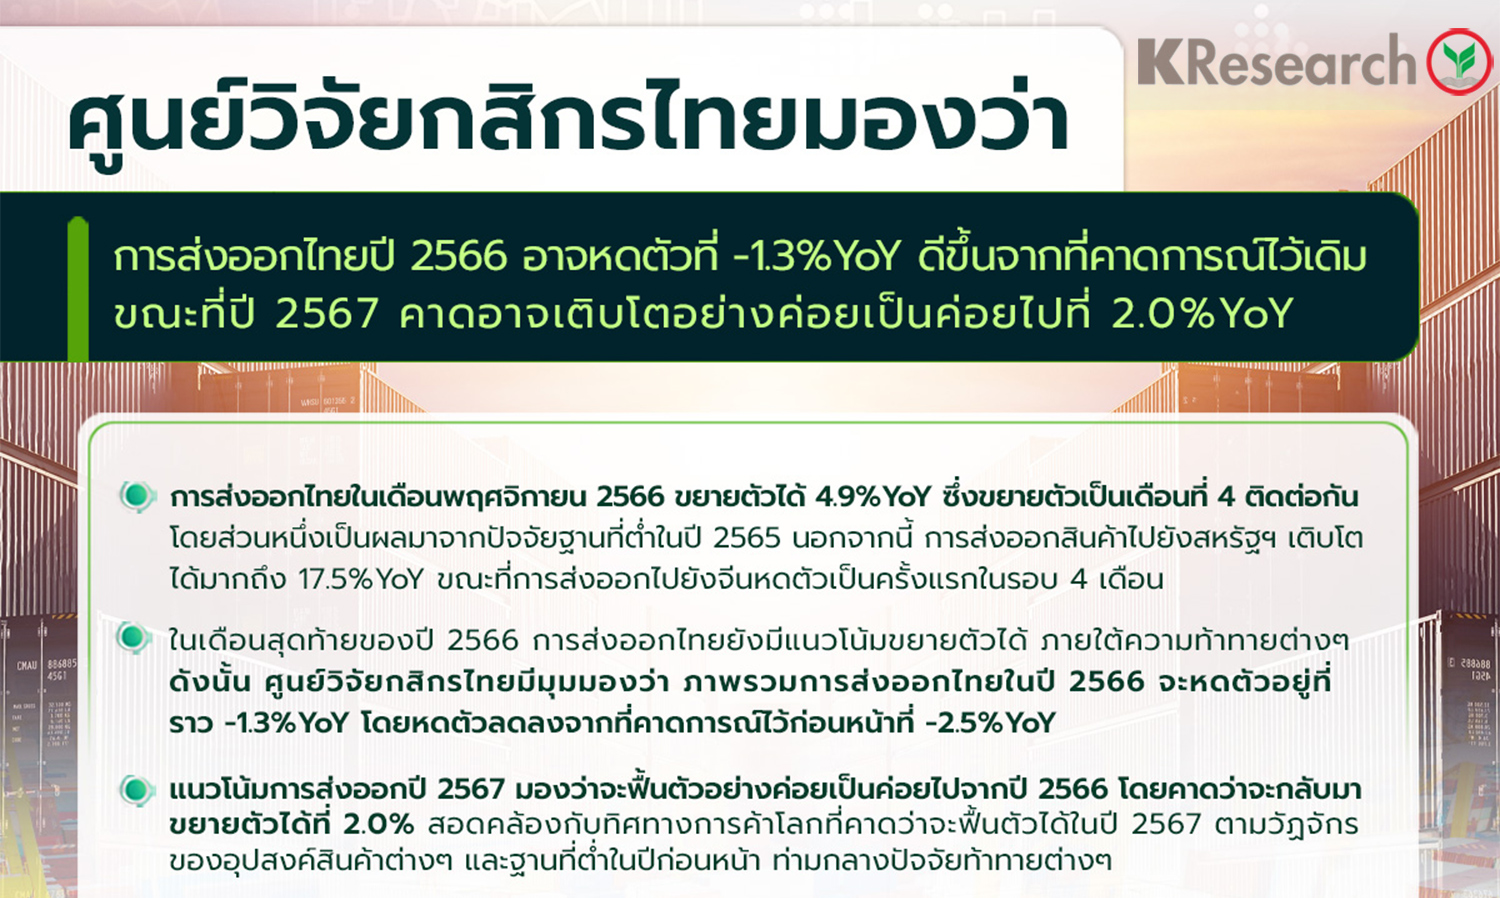 ศูนย์วิจัยกสิกรไทยมีมุมมองว่า การส่งออกไทยปี 2566 อาจหดตัวที่ -1.3%YoY ดีขึ้นจากที่คาดการณ์ไว้เดิม ขณะที่ปี 2567 คาดอาจเติบโตอย่างค่อยเป็นค่อยไปที่ 2.0%YoY